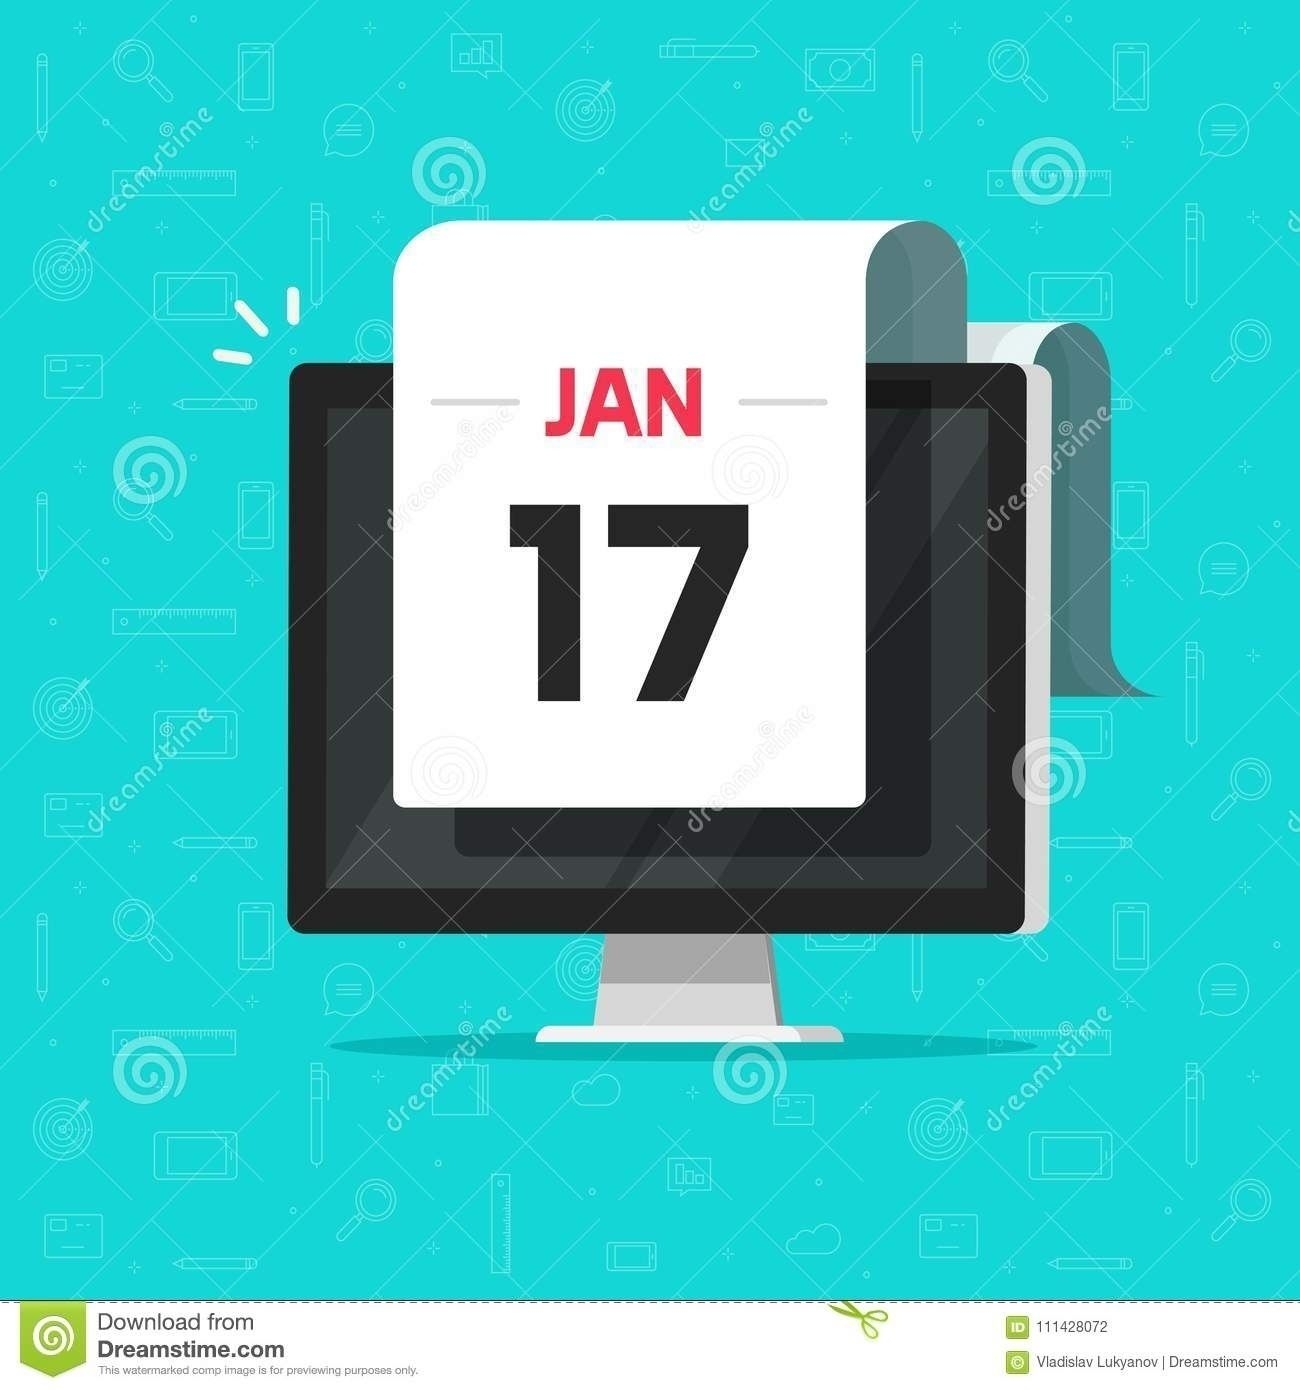 Calendar Countdown For Desktop | Working Calendar